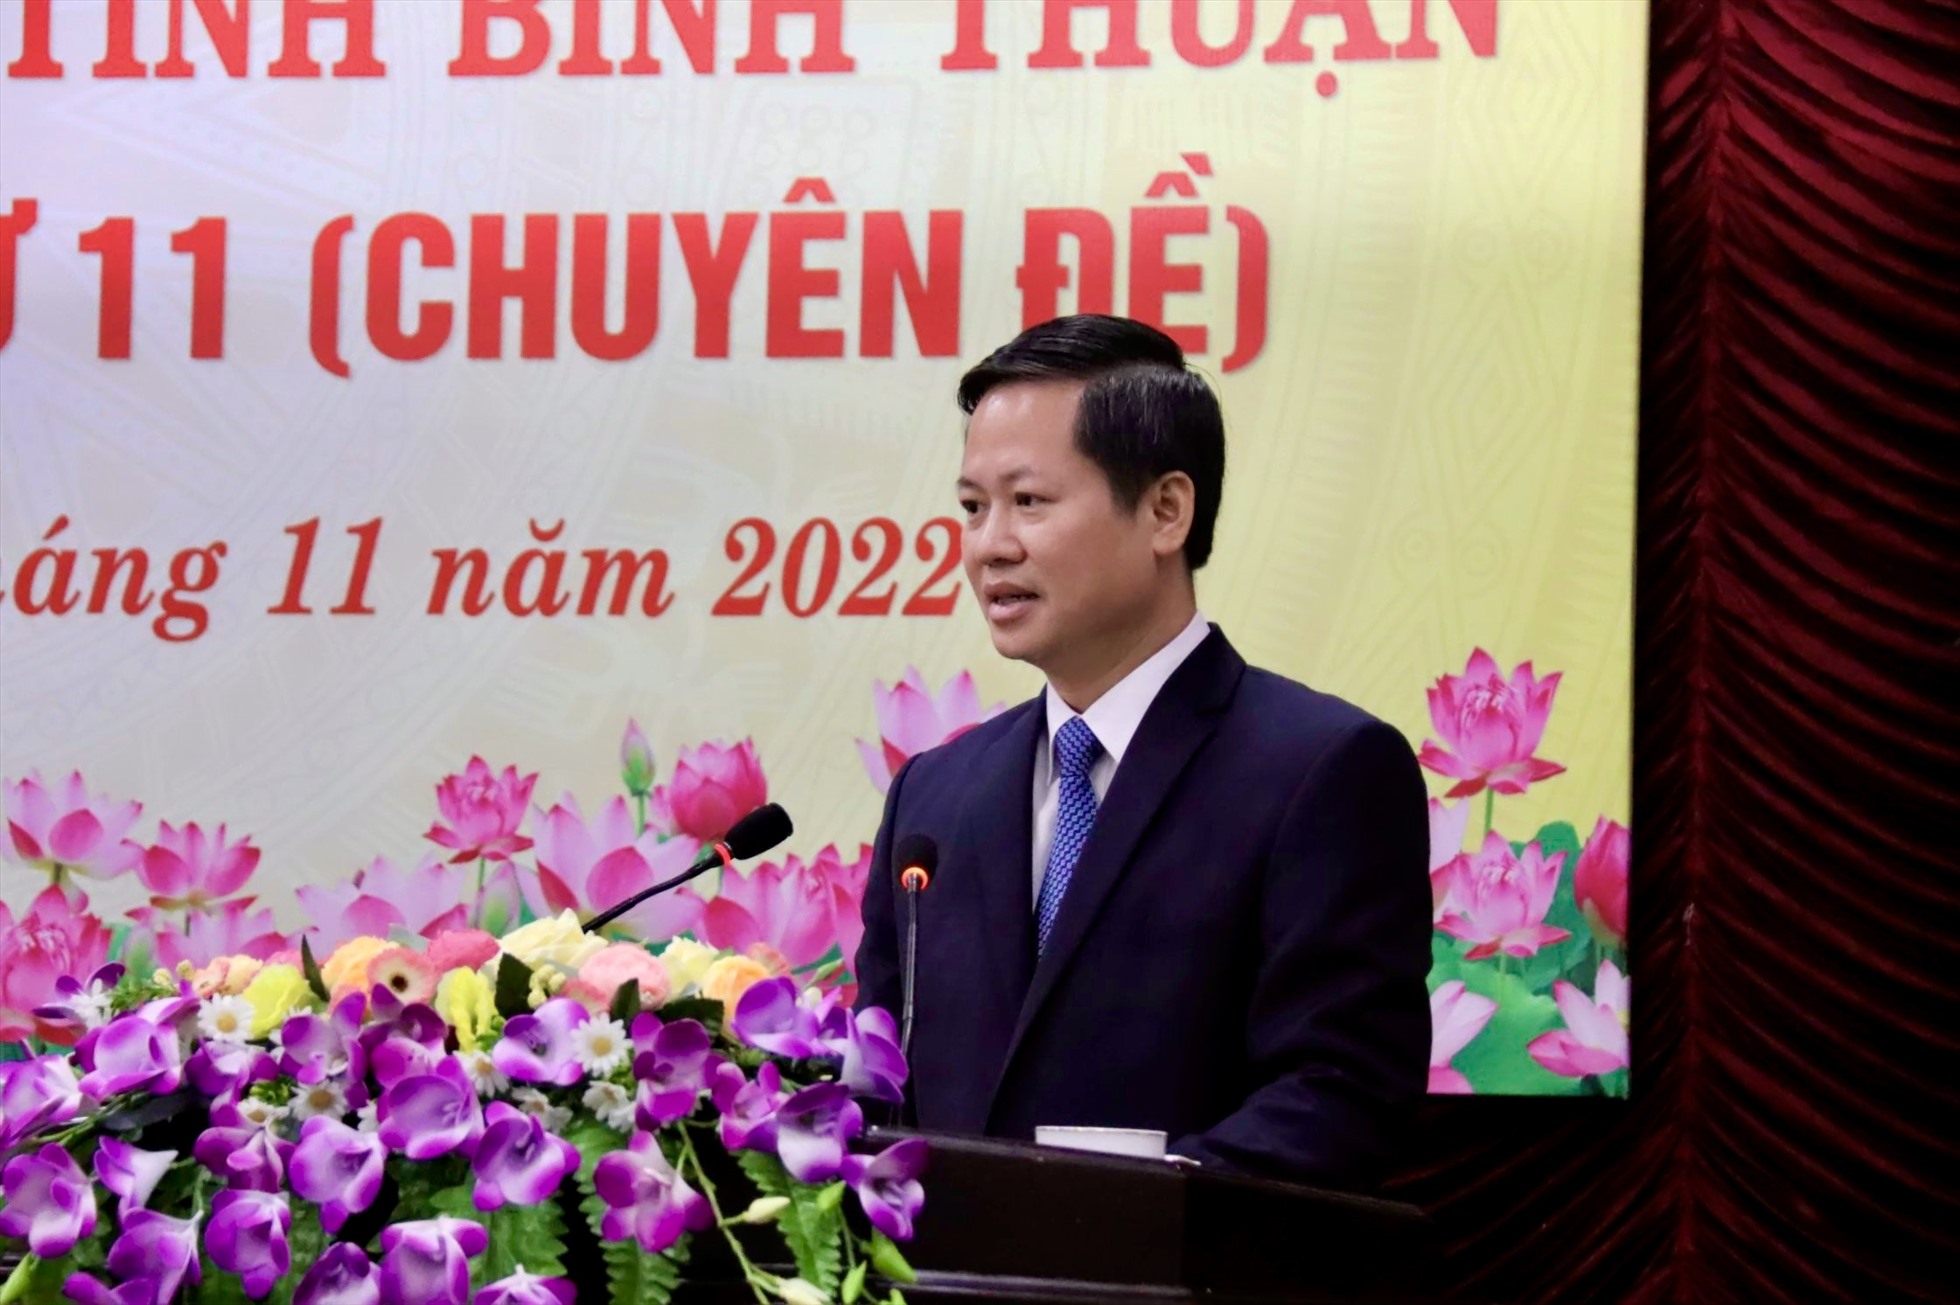 Ông Đoàn Anh Dũng được bầu làm chủ tịch UBND tỉnh Bình Thuận. Ảnh: Phạm Duy